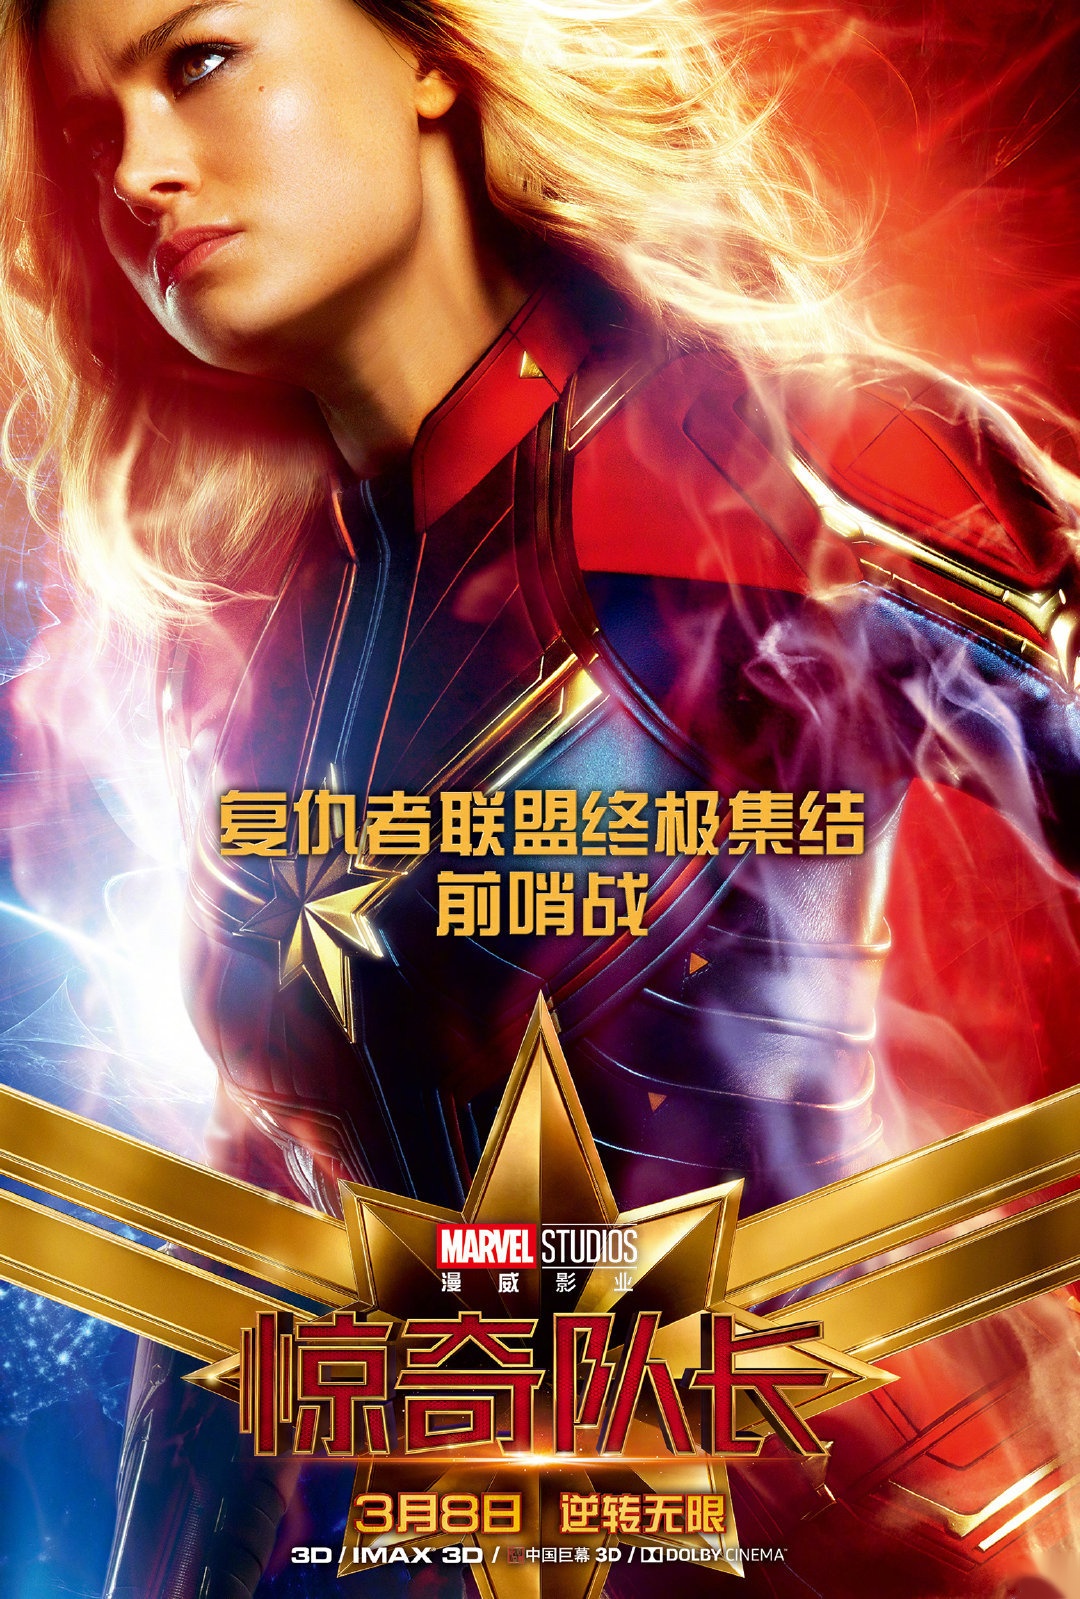 漫威超级英雄大片《惊奇队长》发布一组中文版角色海报,本着以大橘为